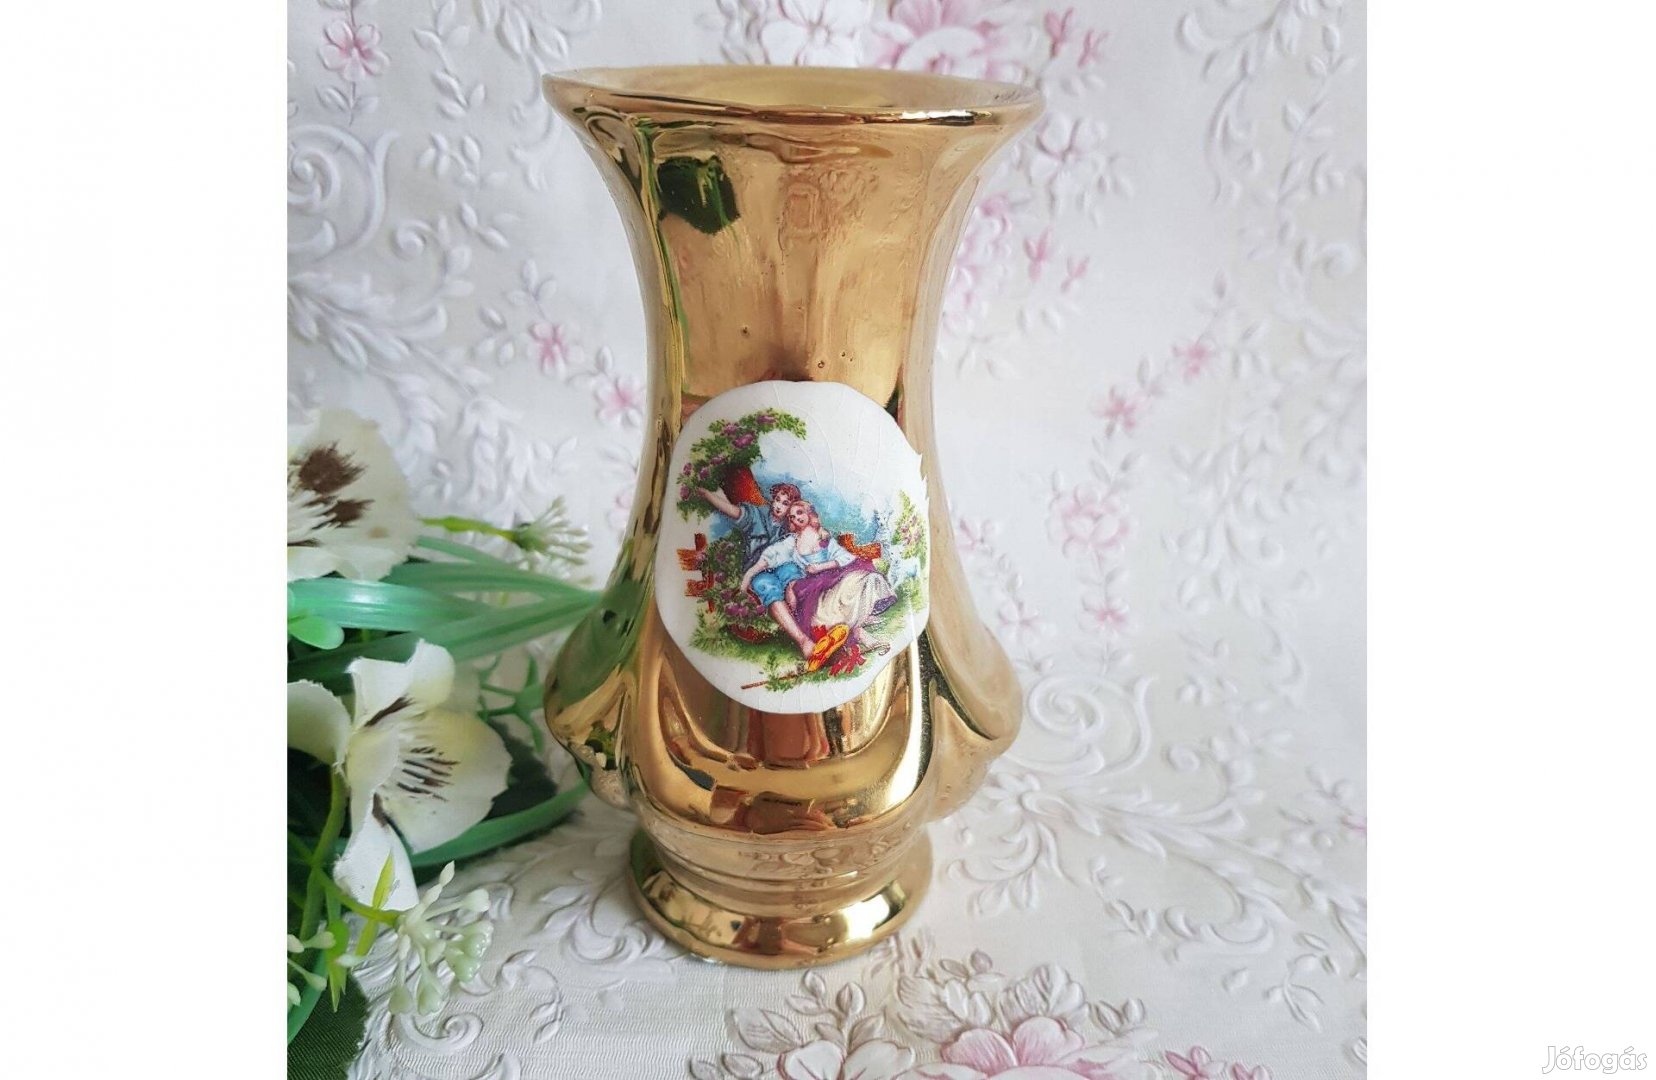 Új, aranyszínű, szerelmespárt ábrázoló kerámia váza